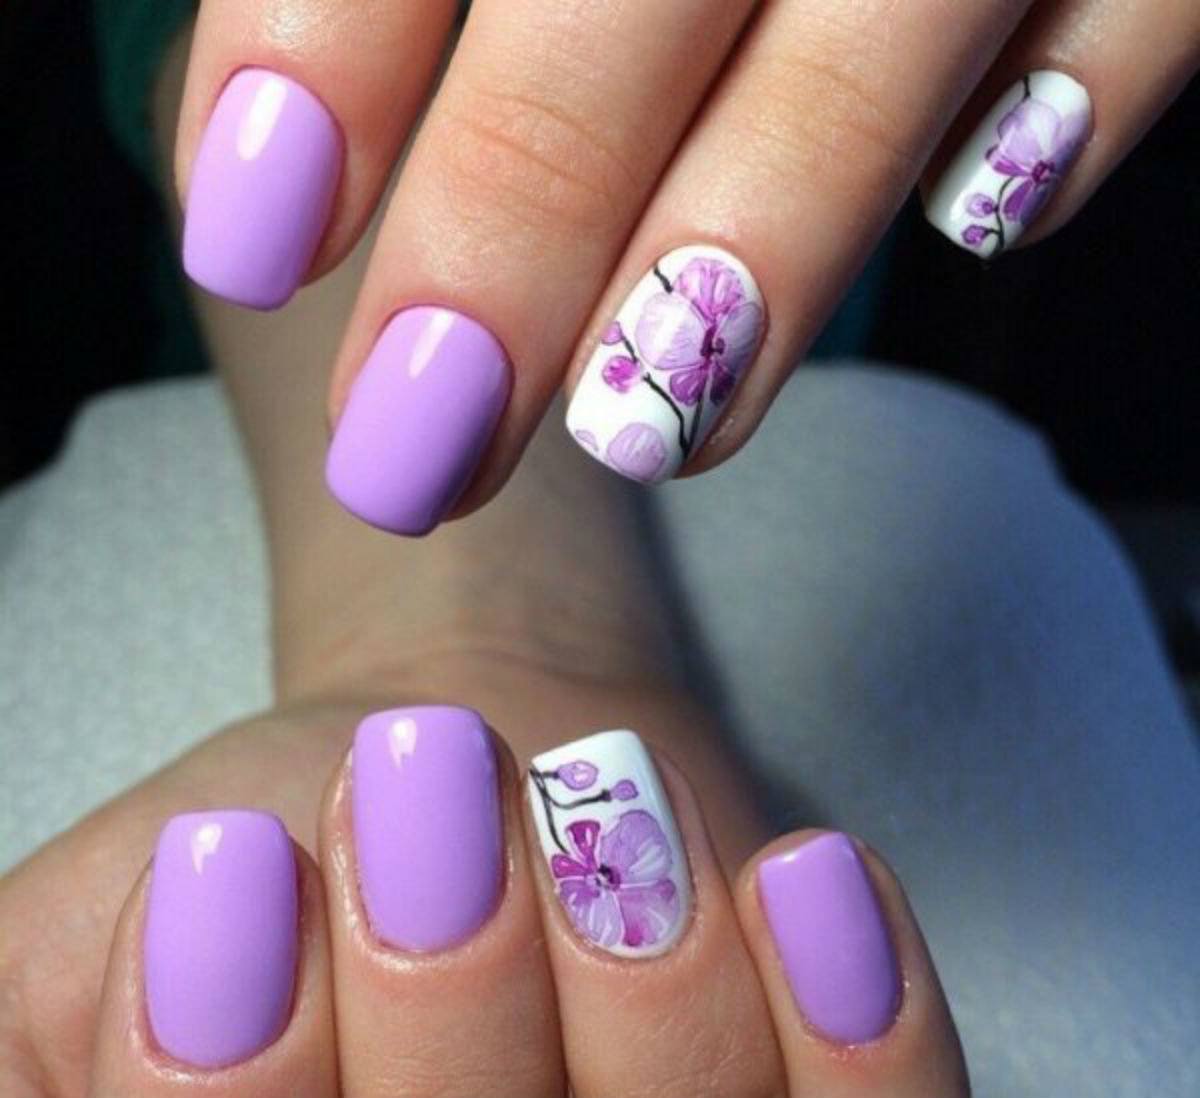 Фиолетовый маникюр 2019 - 100 фото ногтей с лаком фиолетового цвета | портал для женщин womanchoice.net